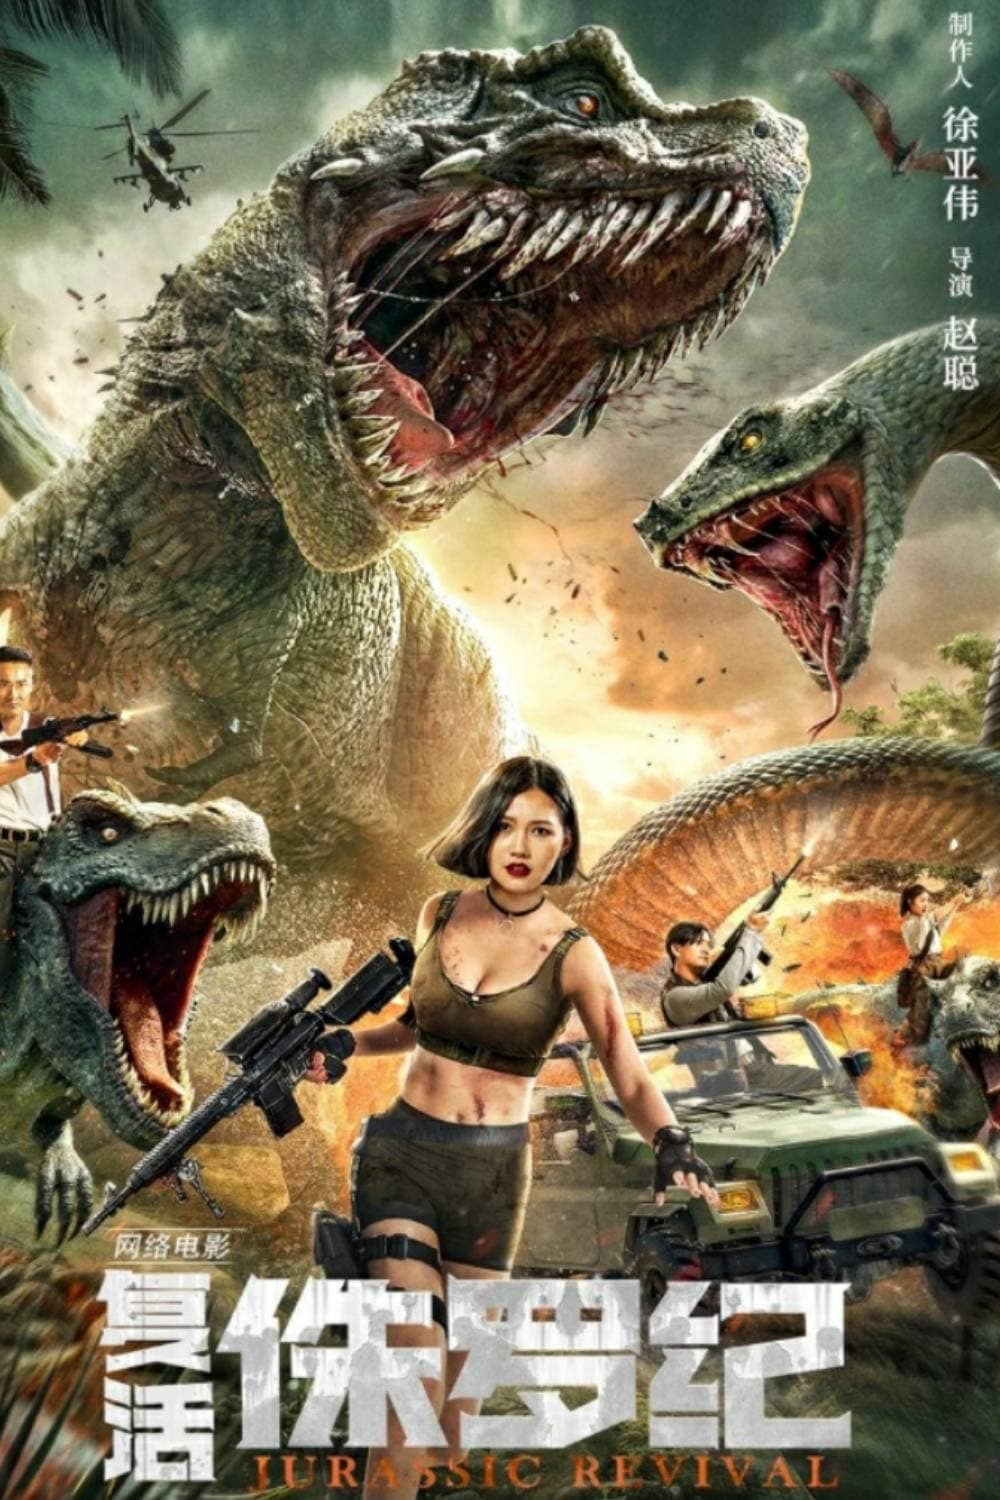 Jurassic Revival (2022) poster - Allmovieland.com